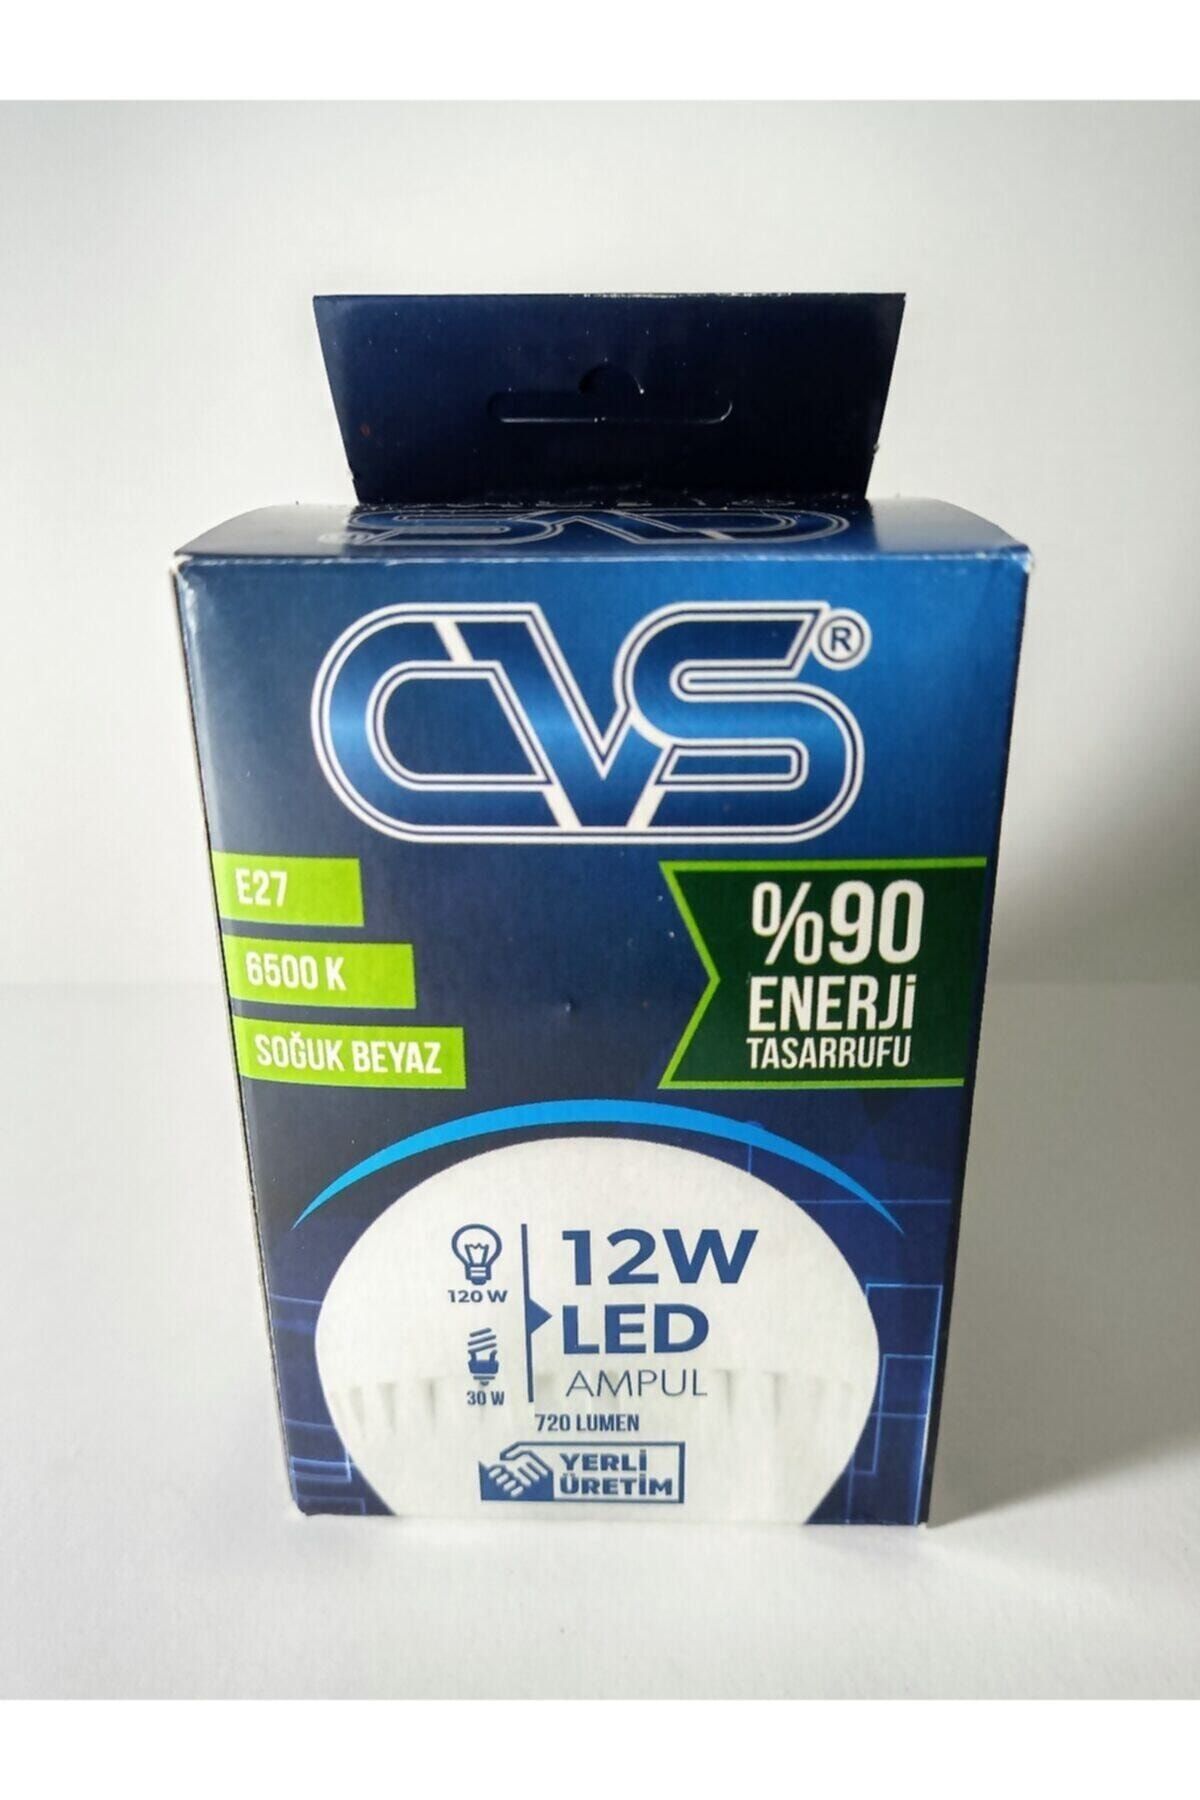 CVS 12 Watt Led Ampul A %90 Enerji Tasarrufu 720 Lümen E27 Duy 10 Adet